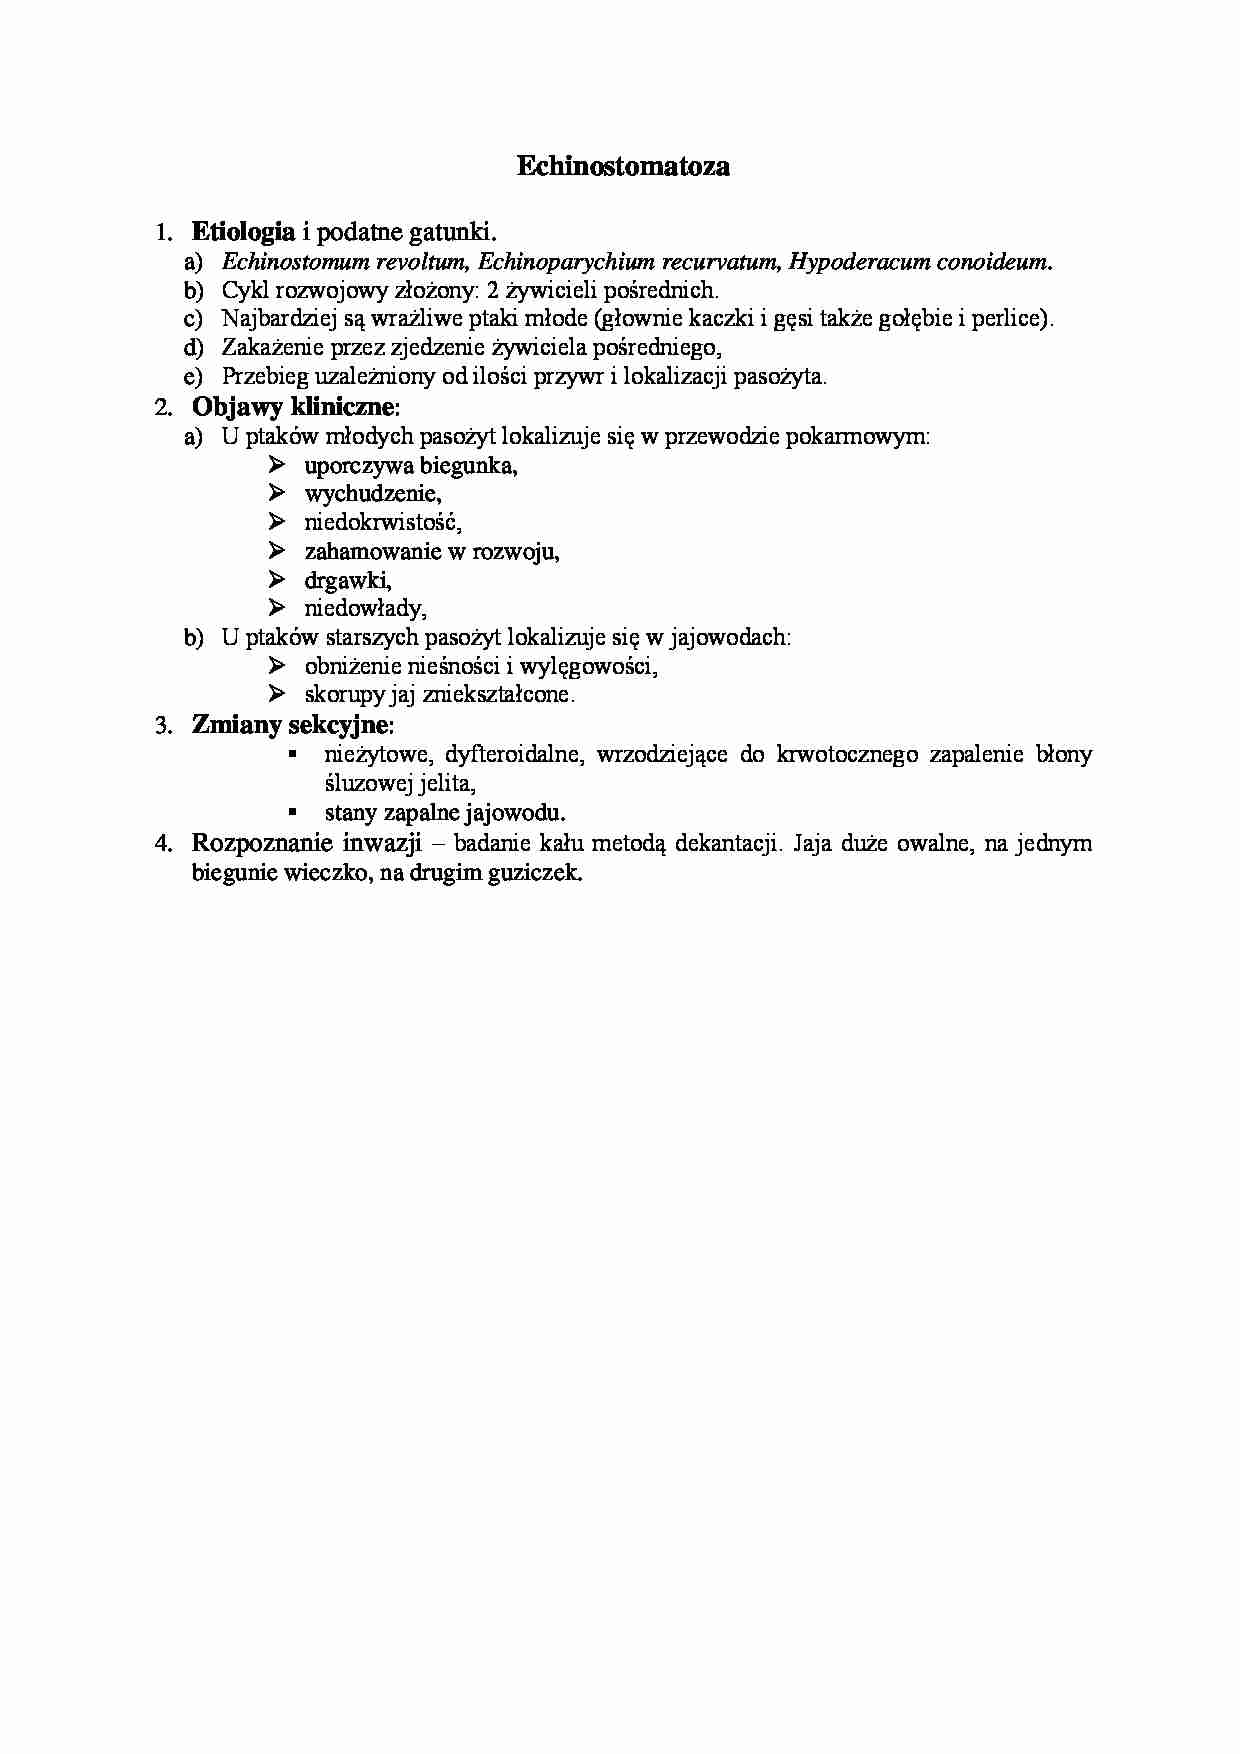 Choroby spowodowane inwazją przywar - Echinostomatoza - strona 1